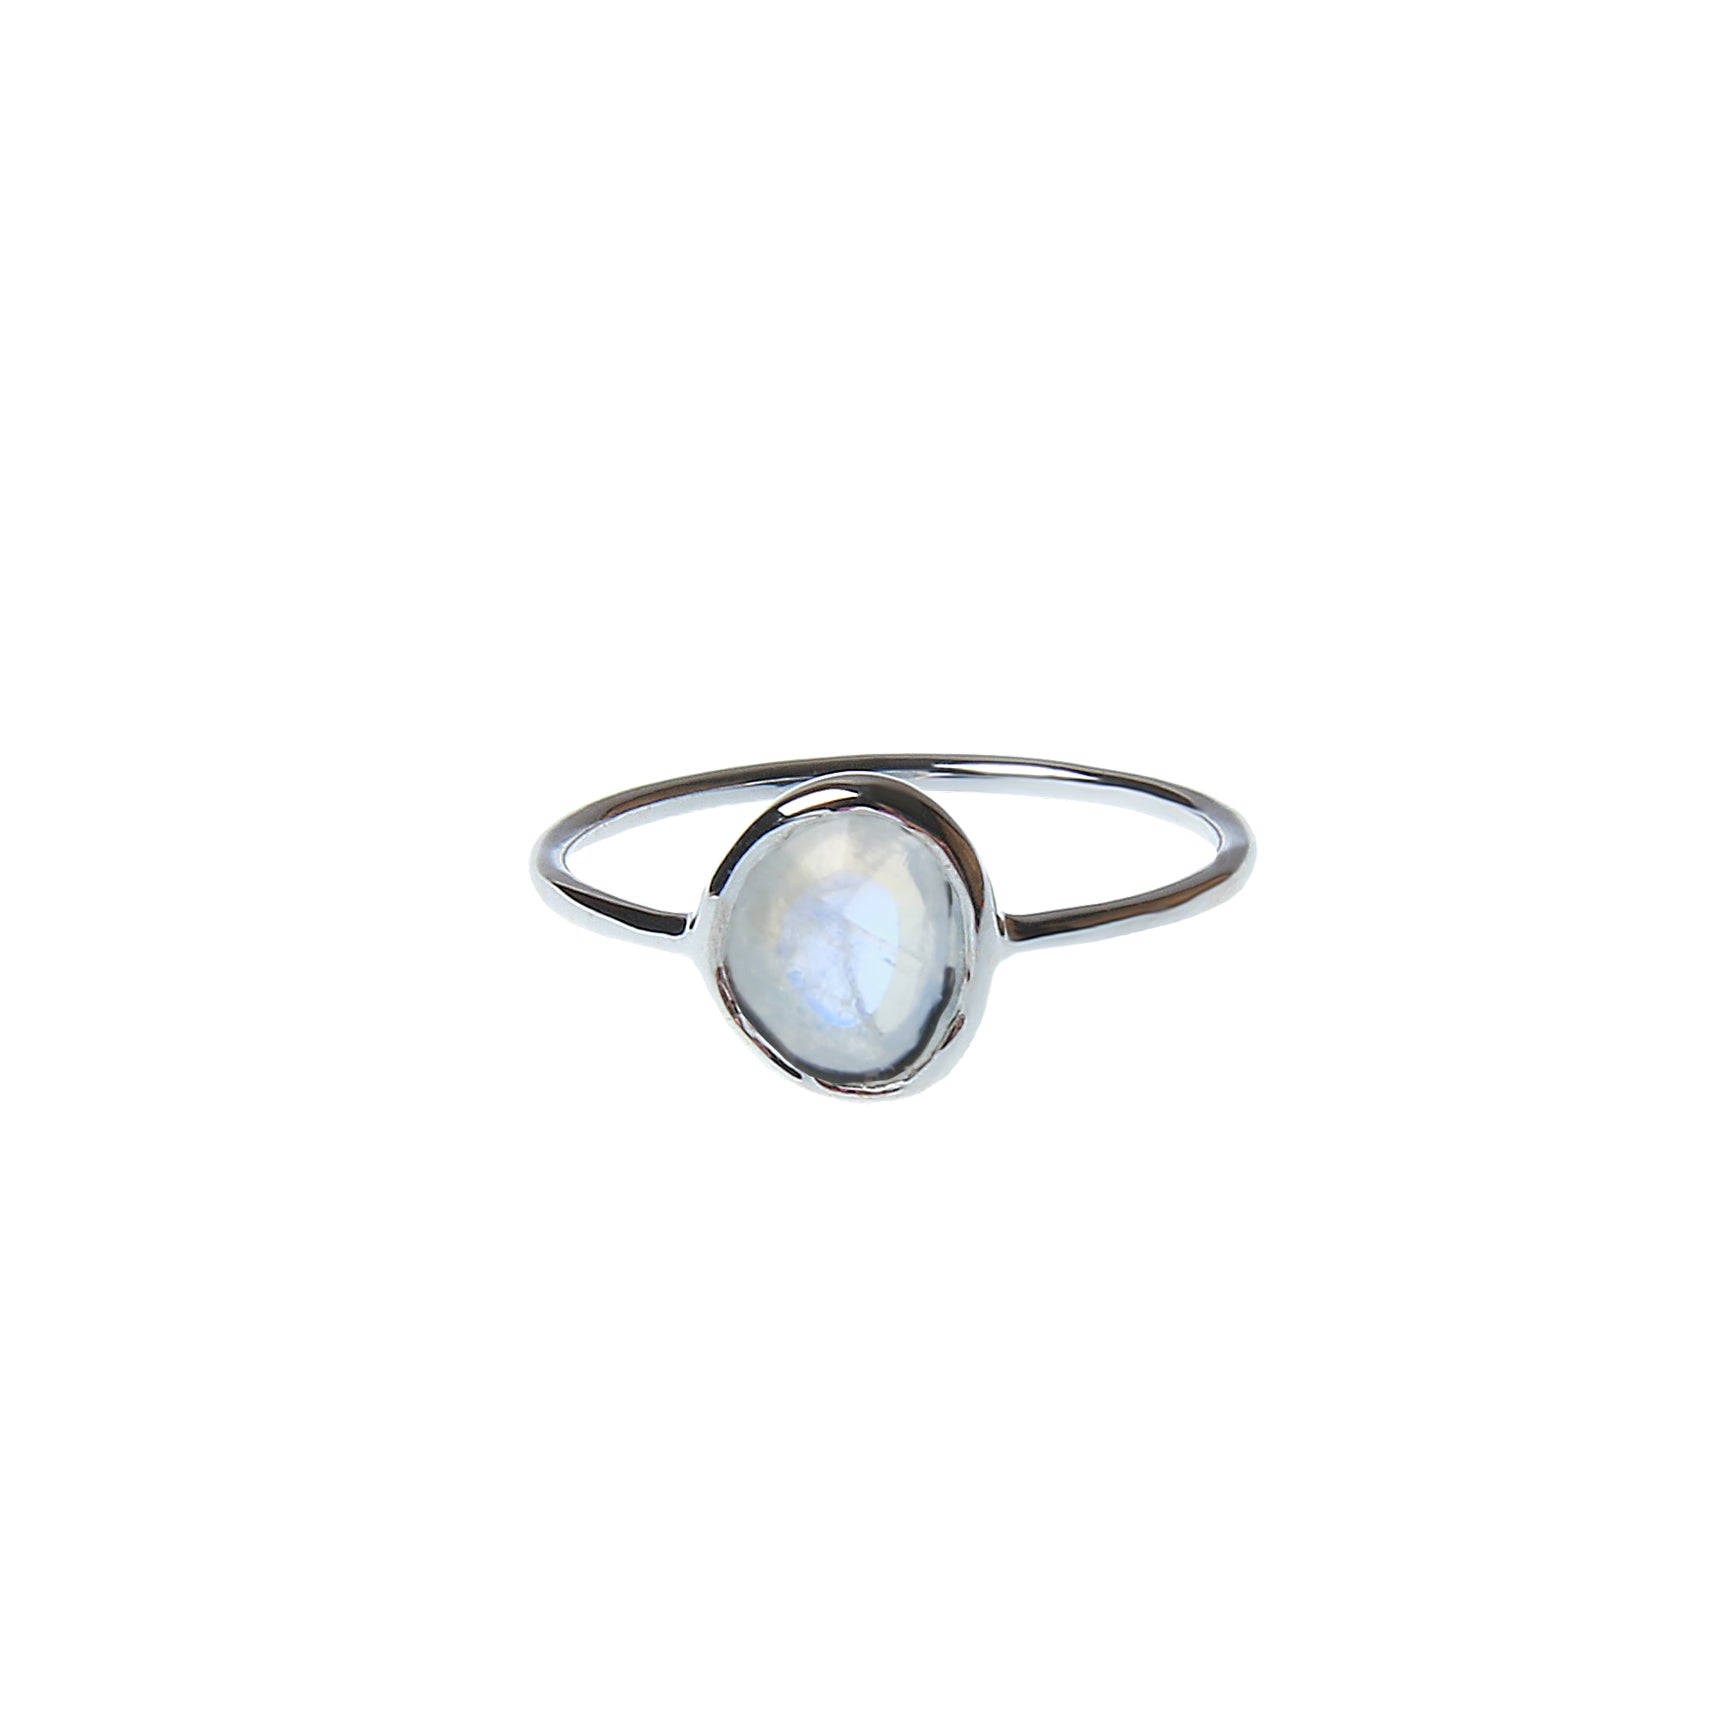 Silberner Ring mit weißem Mondstein